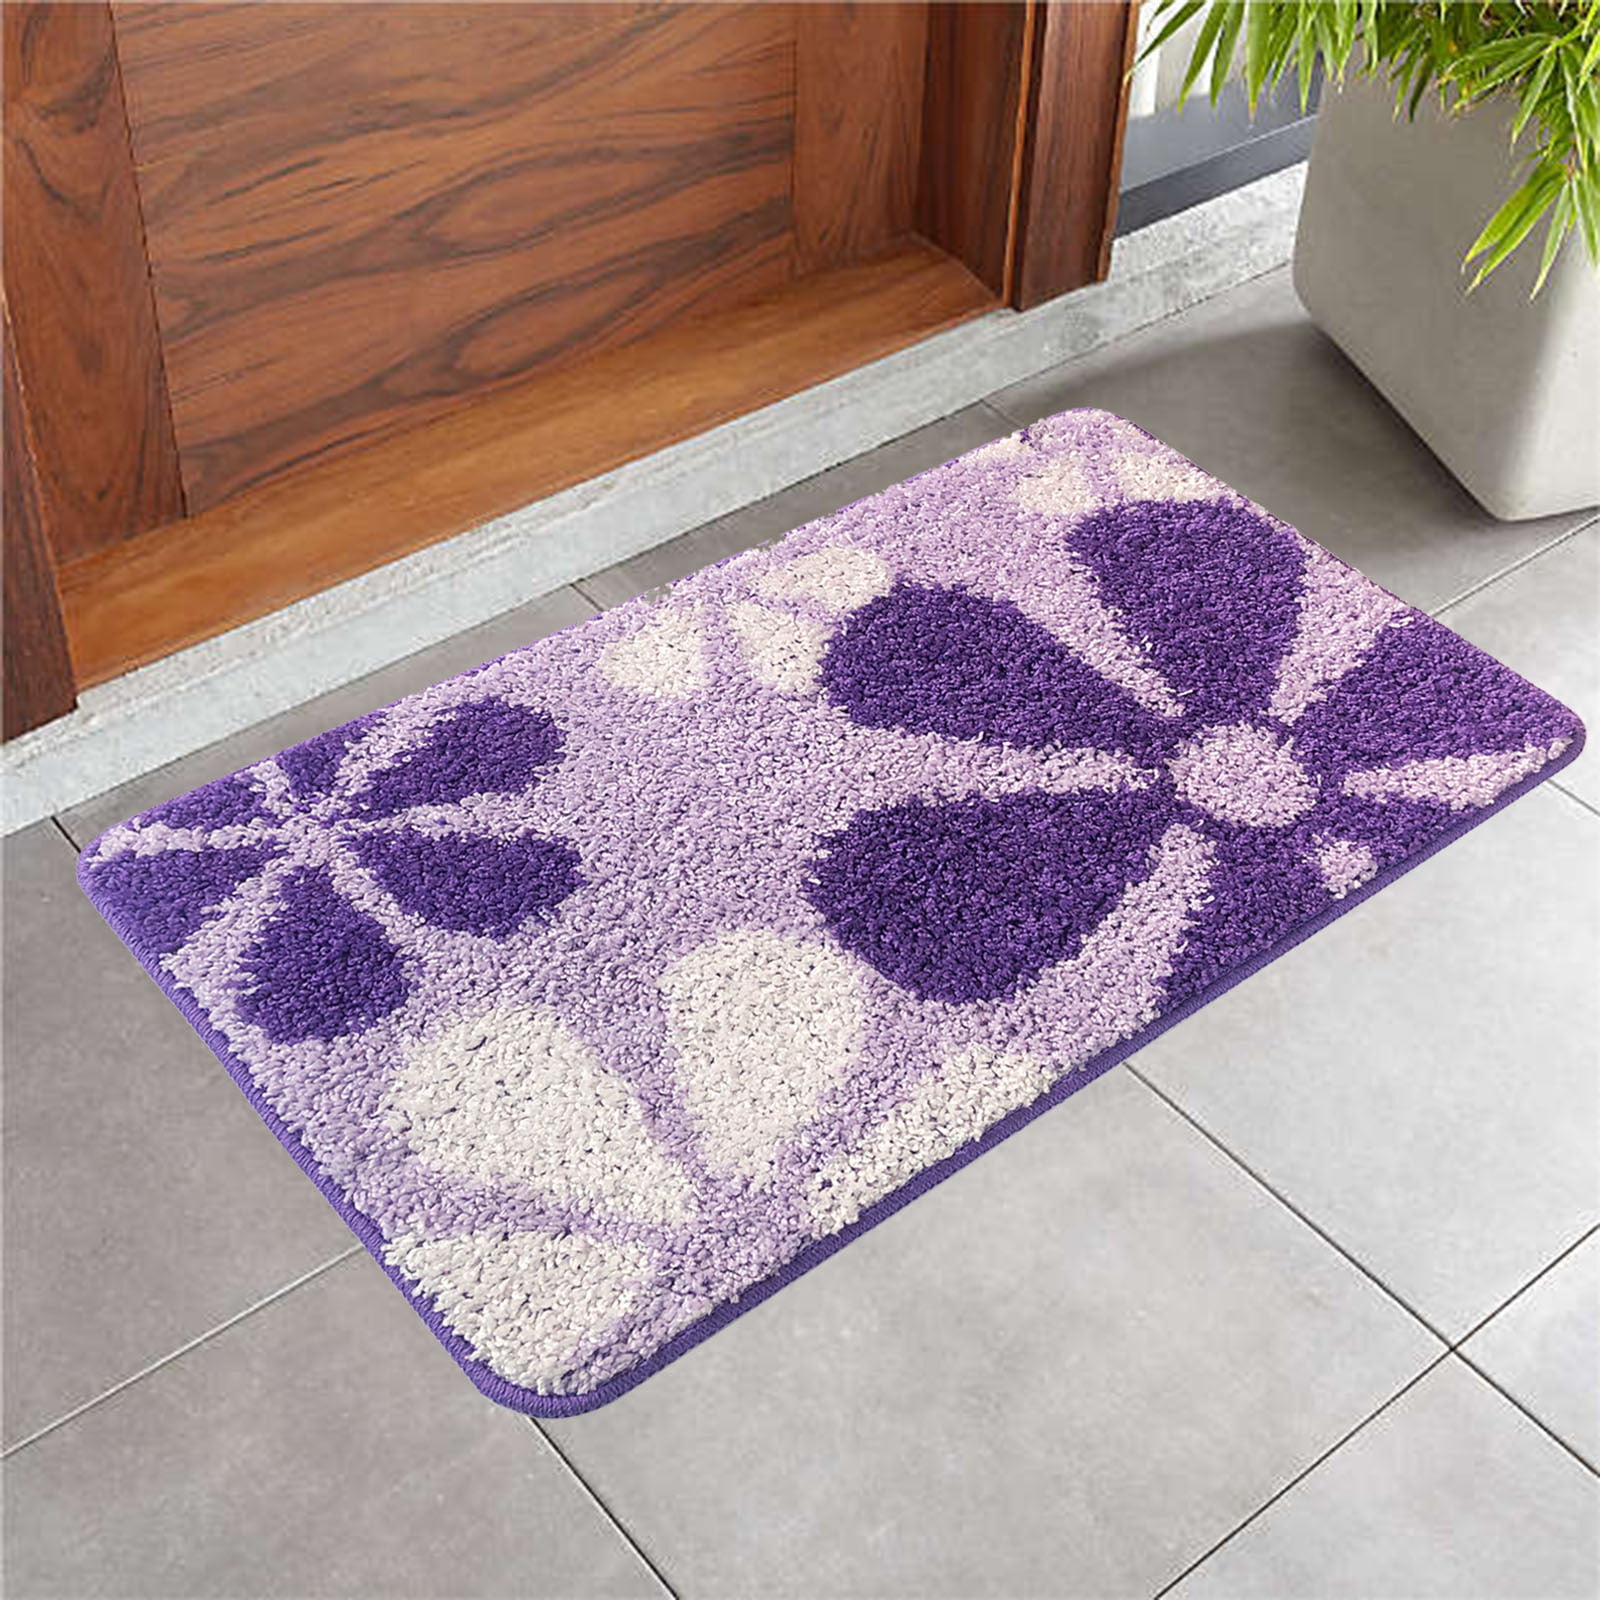 Purple Rose Bathroom Rug Non-Slip Floor Outdoor Indoor Front Door Mat 16x24"